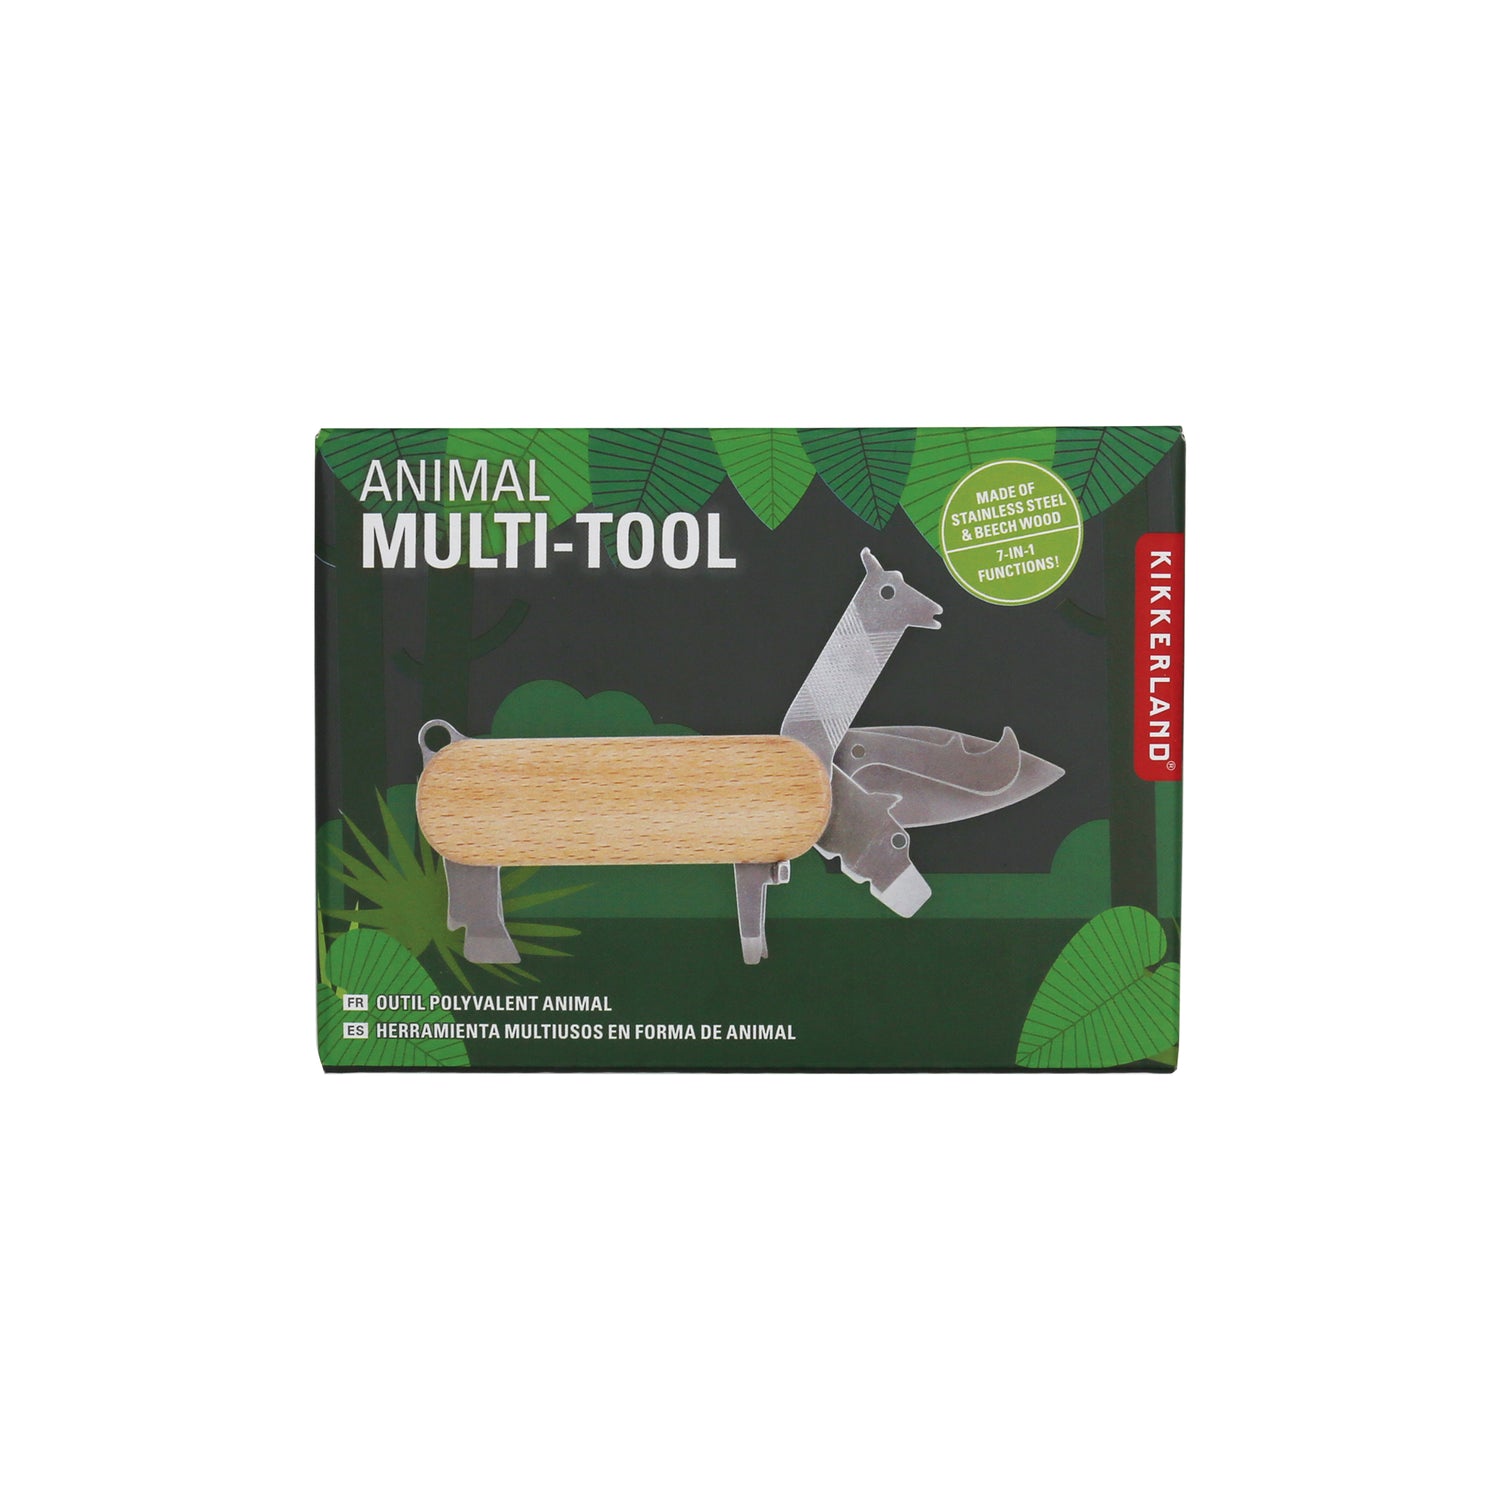 Animal Multi-Tool